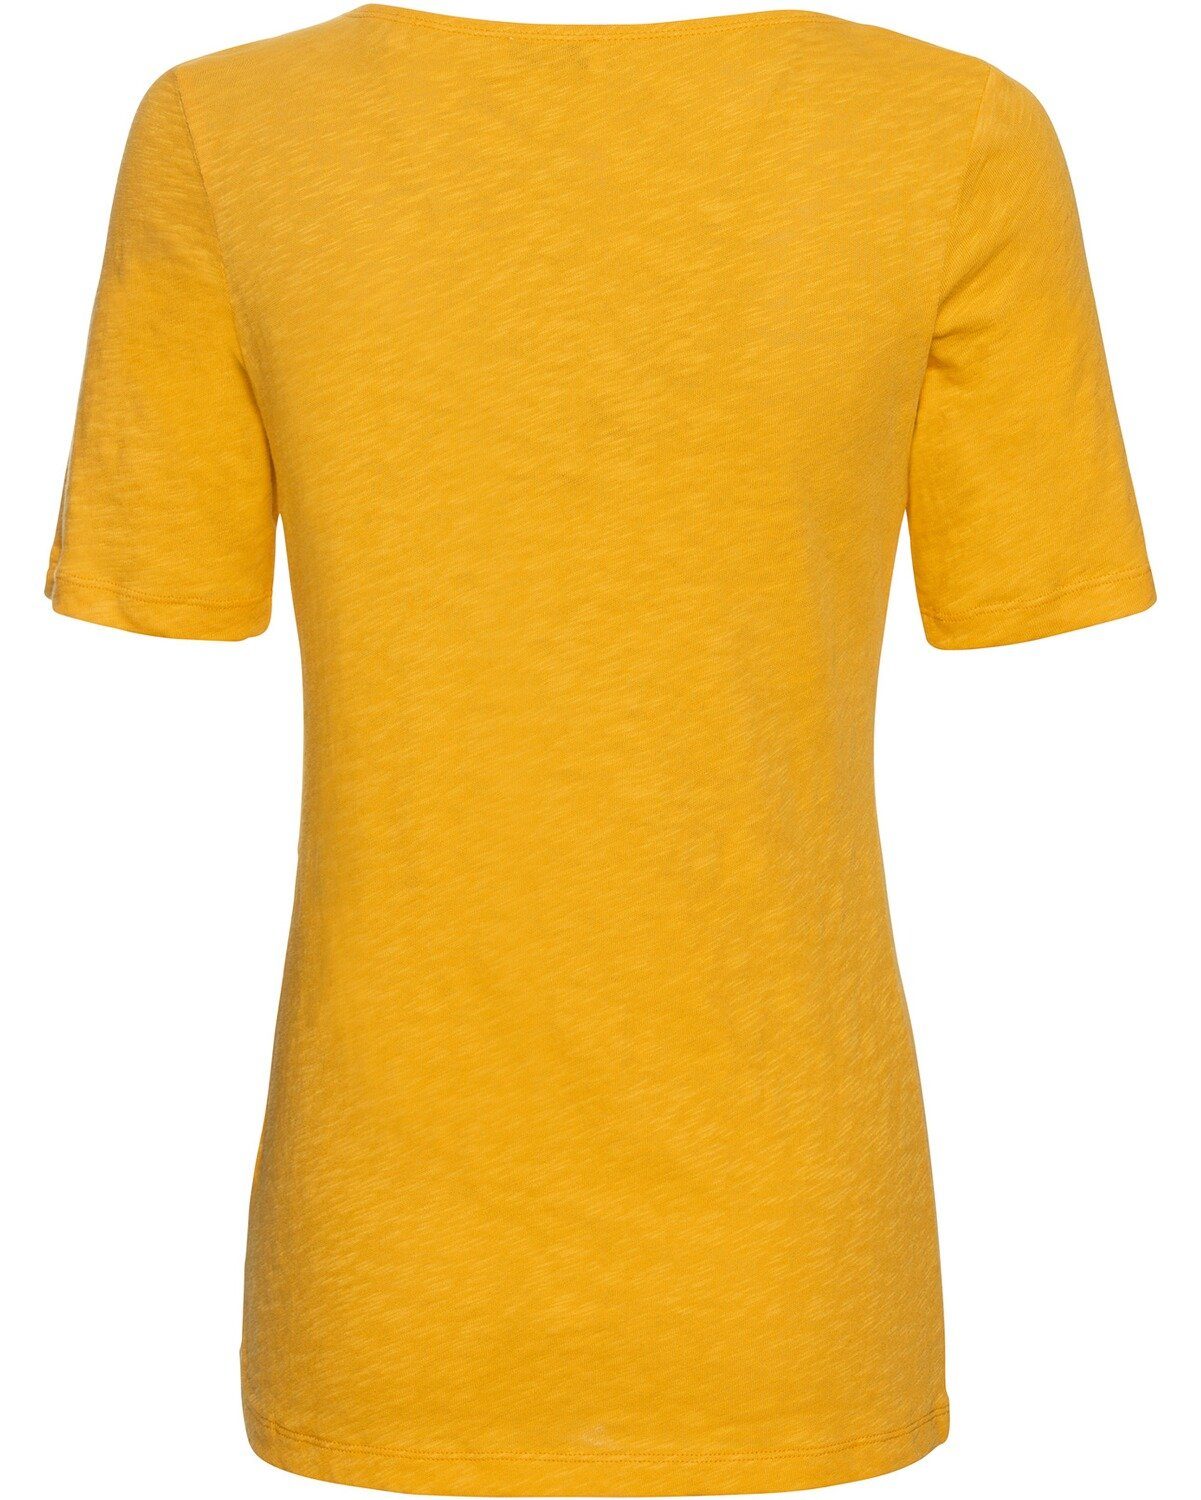 Marc O'Polo T-Shirt Gelb Halbarm-Shirt